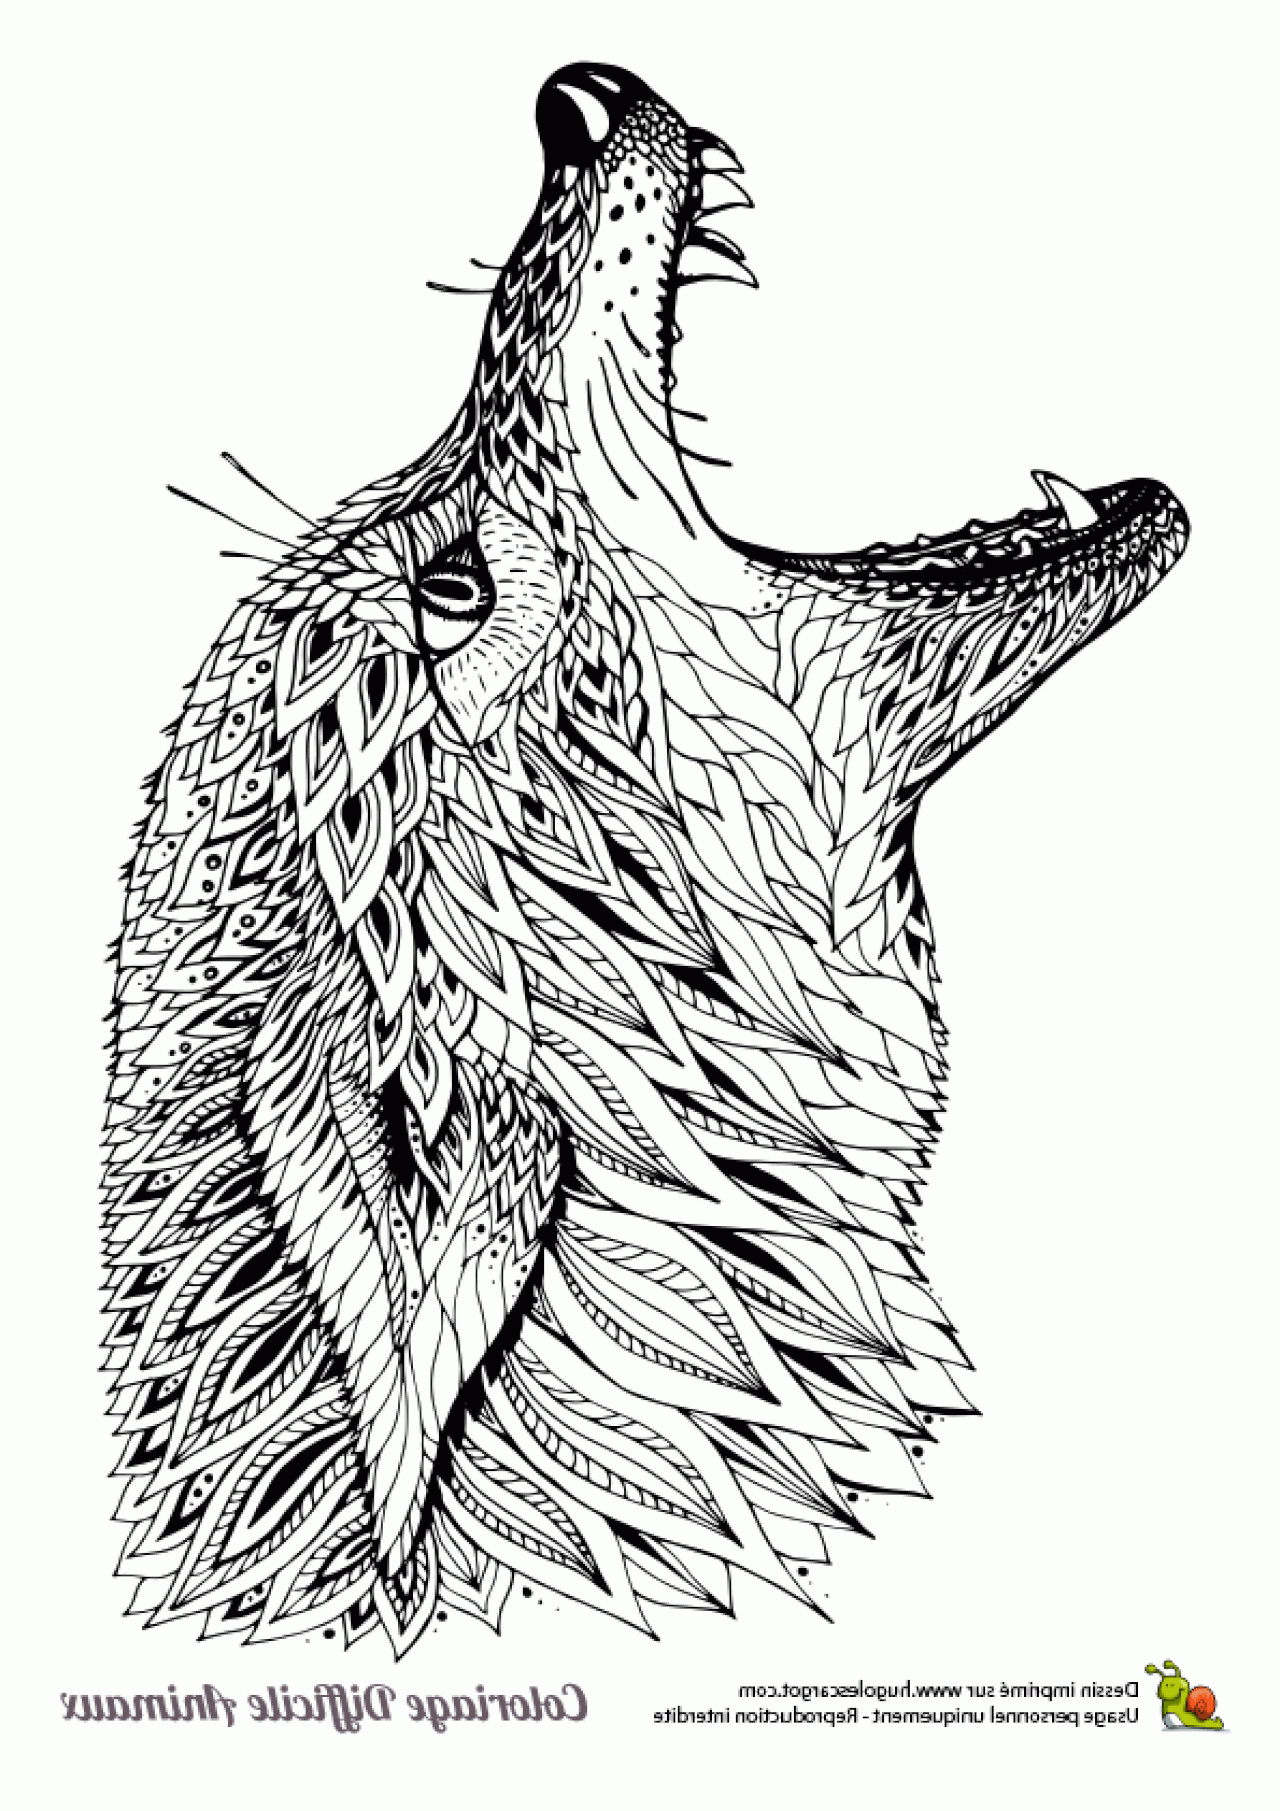 dessin danimaux difficile einzigartig dessin a colorier d une taate de loup